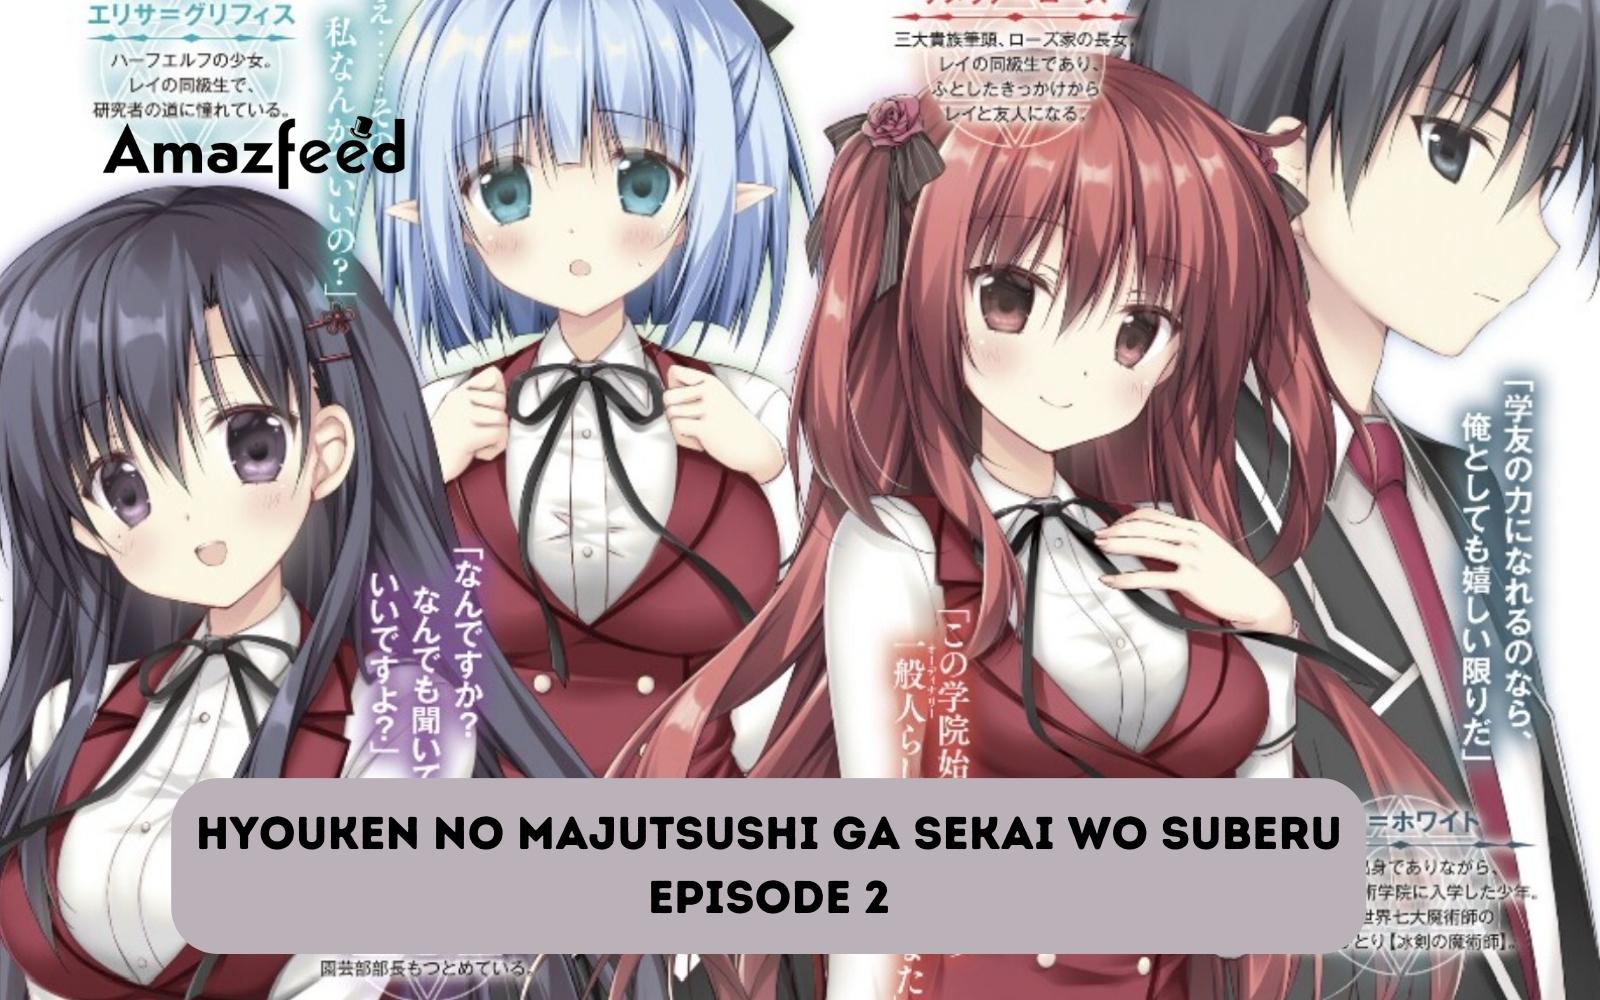 Hyouken no Majutsushi ga Sekai wo Suberu Ep 1 Preview 